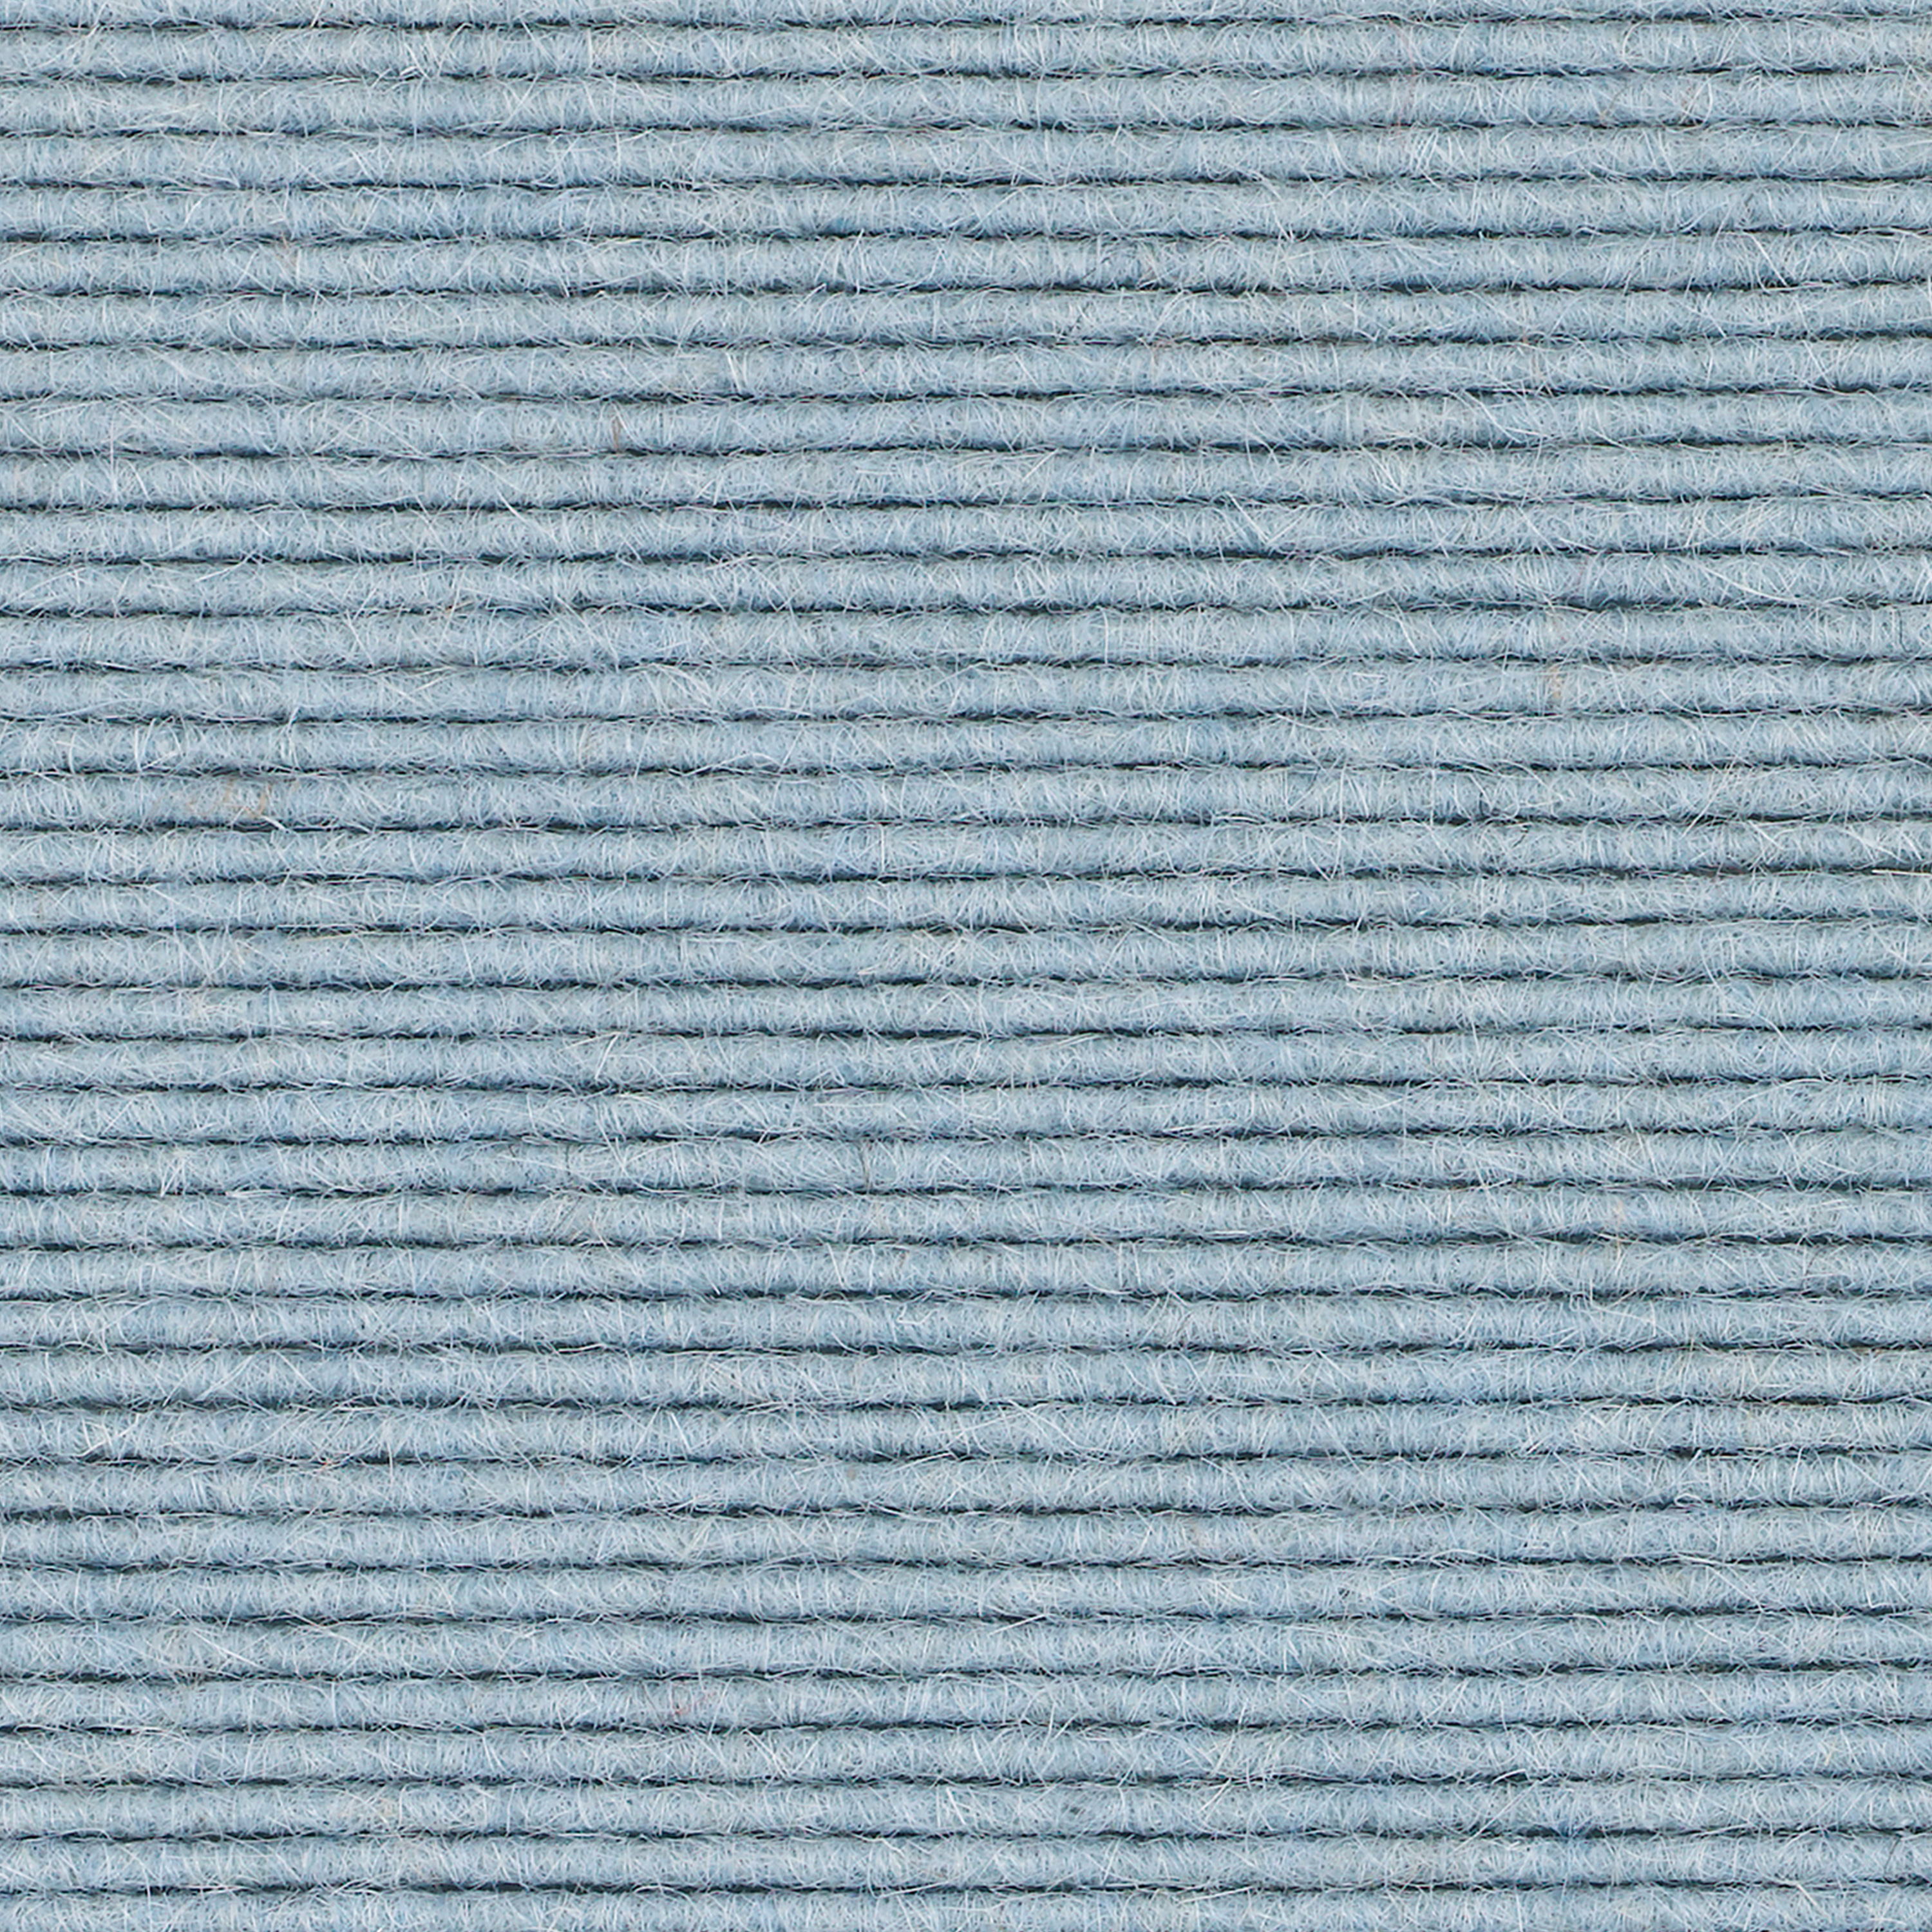 tretford-Teppich 'Arktis (641)', 2 x 2 m, ungekettelt